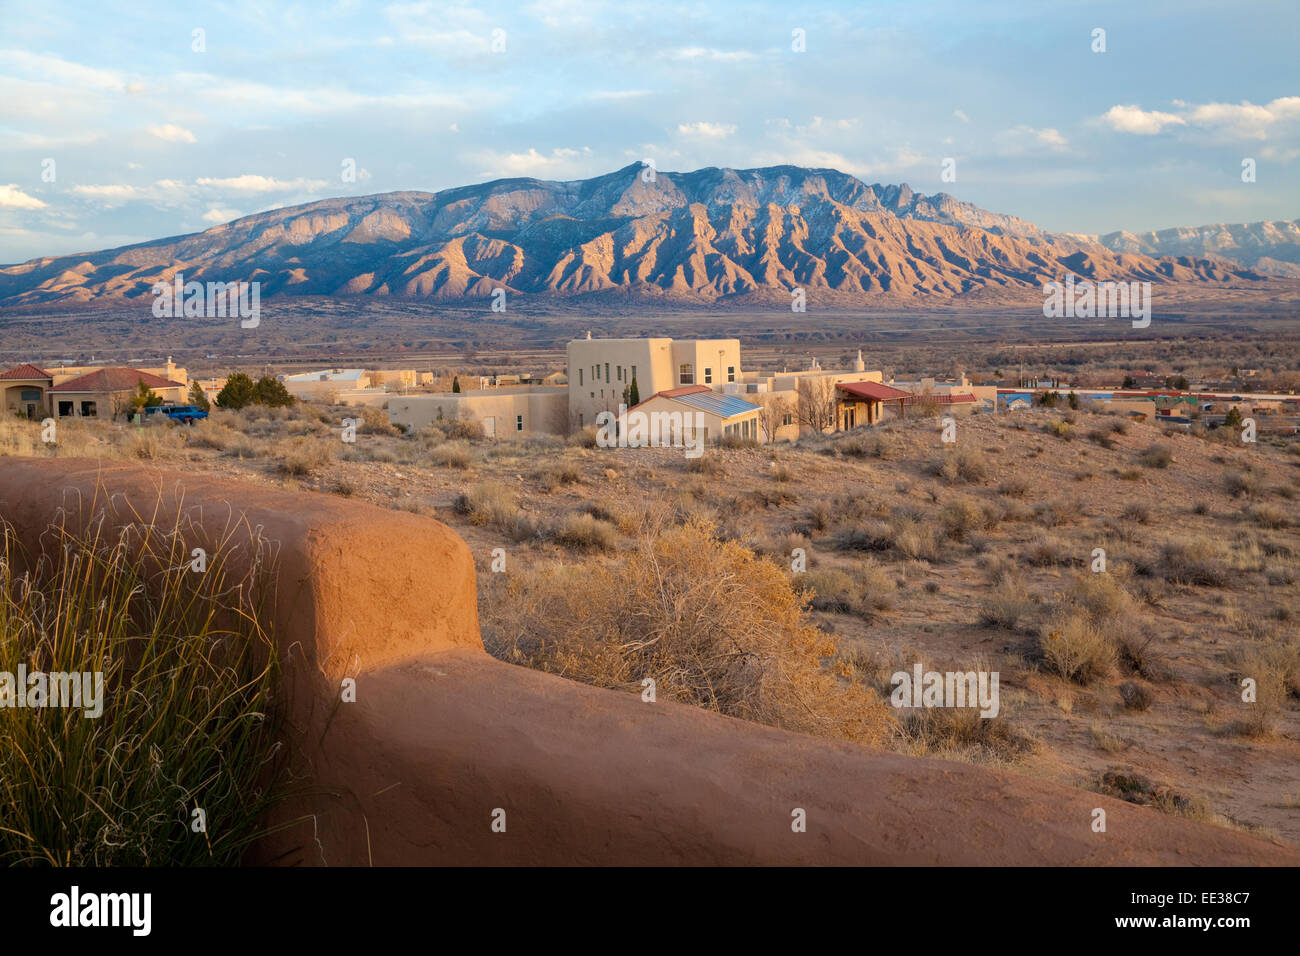 View of Sandia mountains, Albuquerque New Mexico. Stock Photo